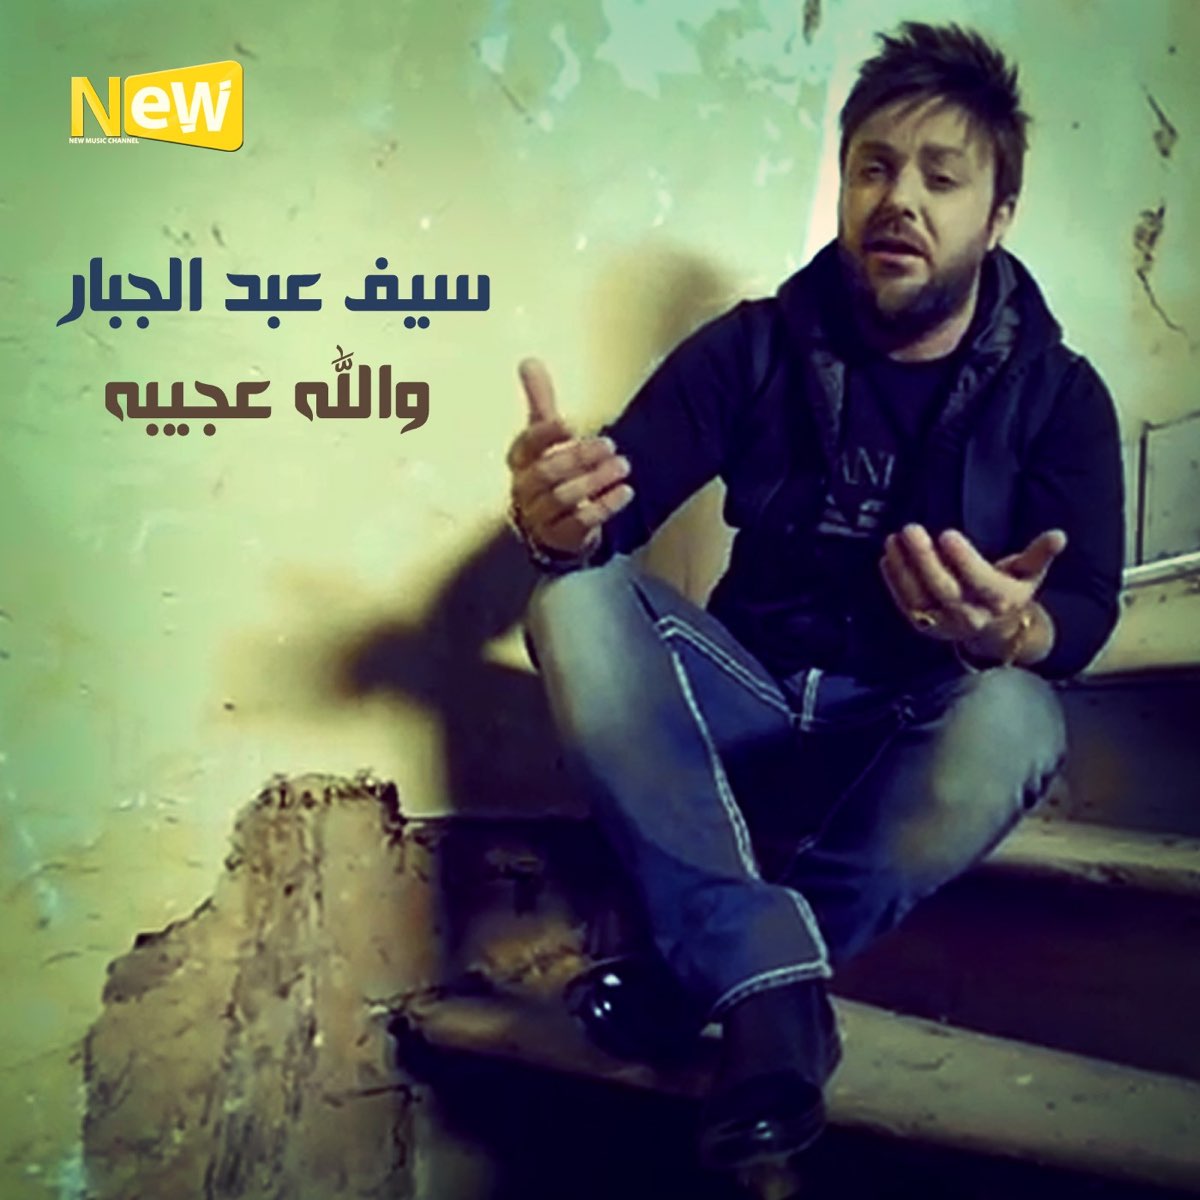 والله عجيبه - Single – Album par سيف عبد الجبار – Apple Music